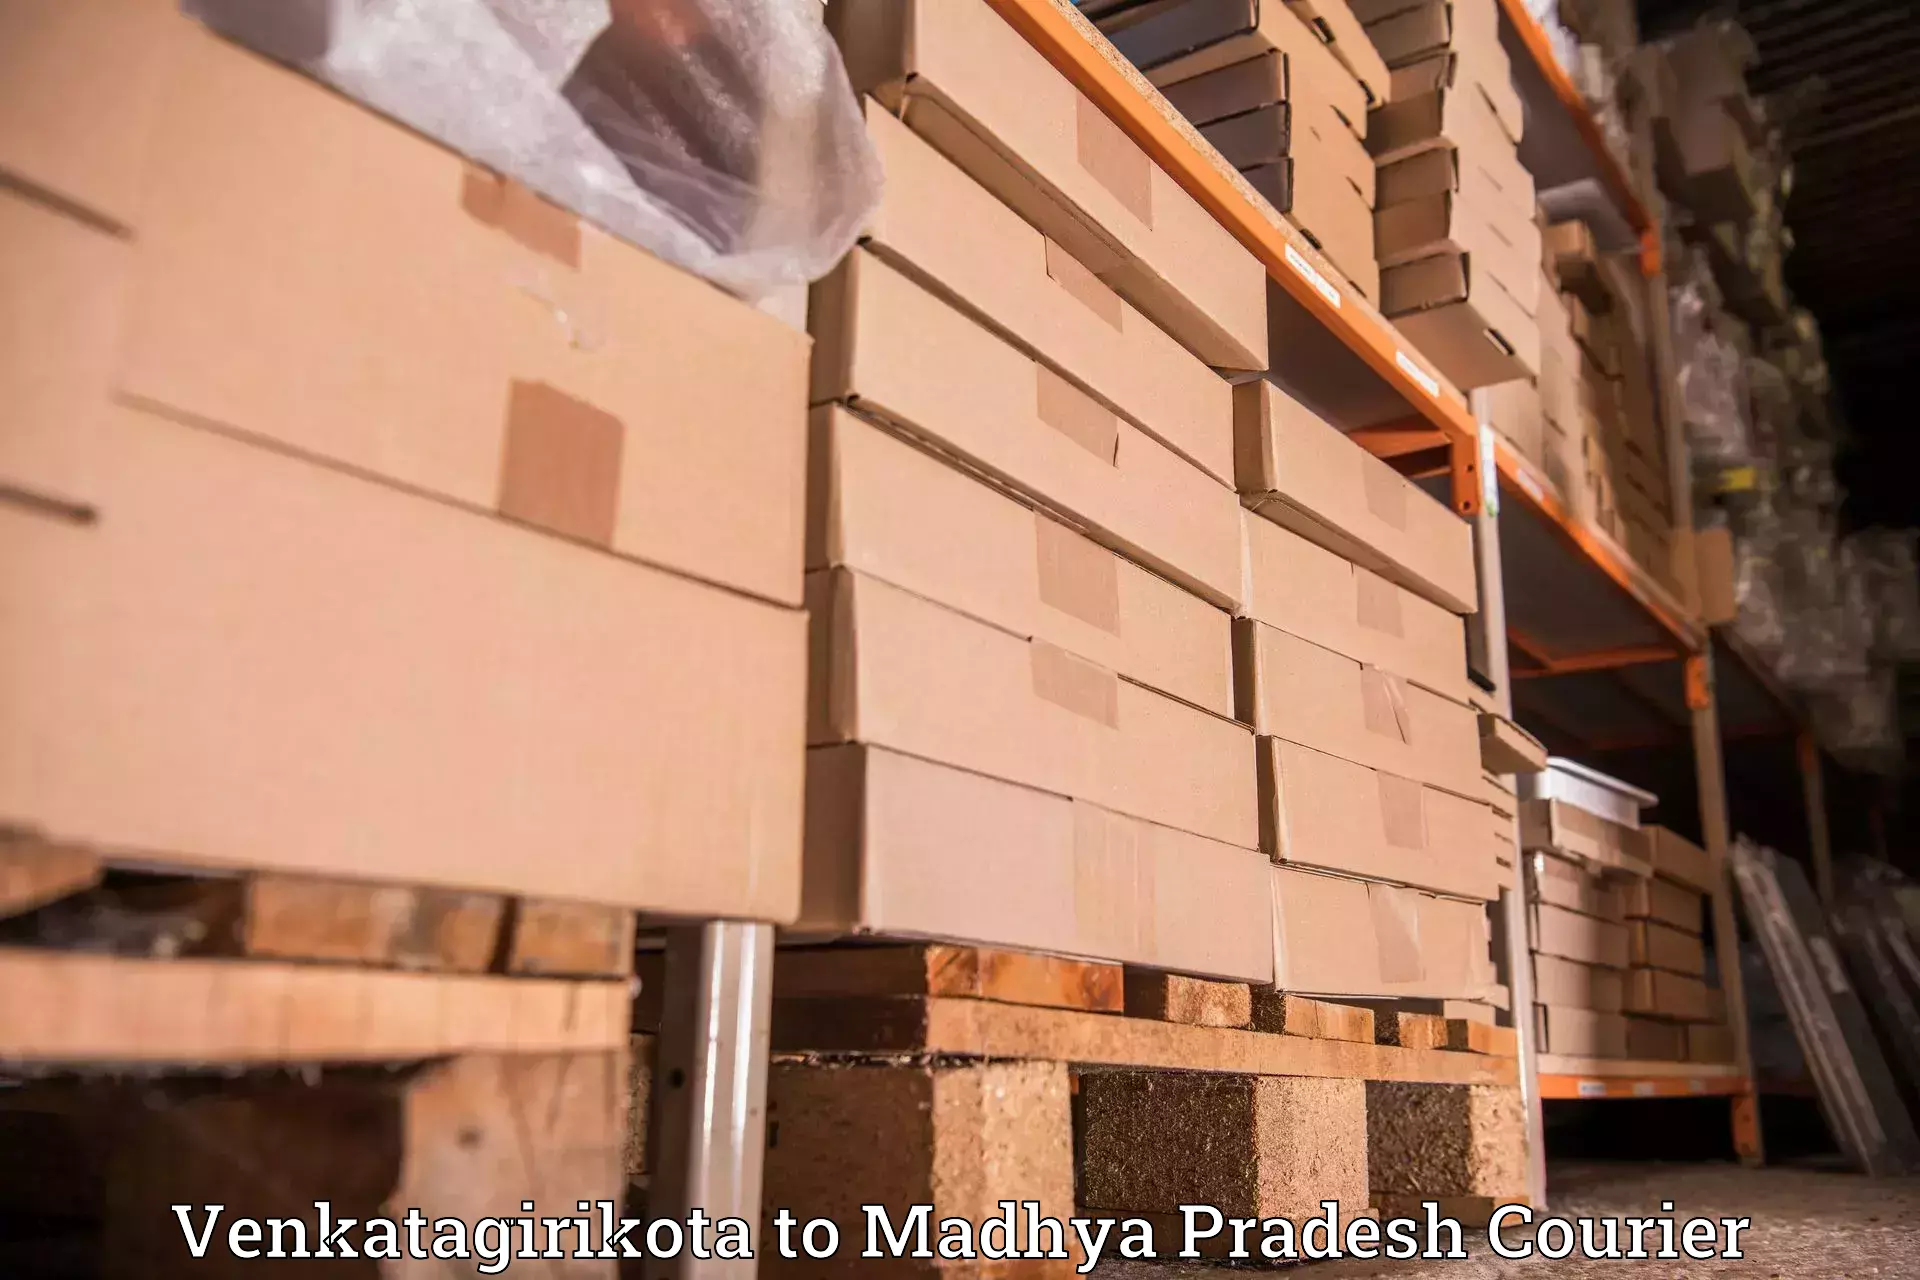 High-priority parcel service in Venkatagirikota to Vidisha